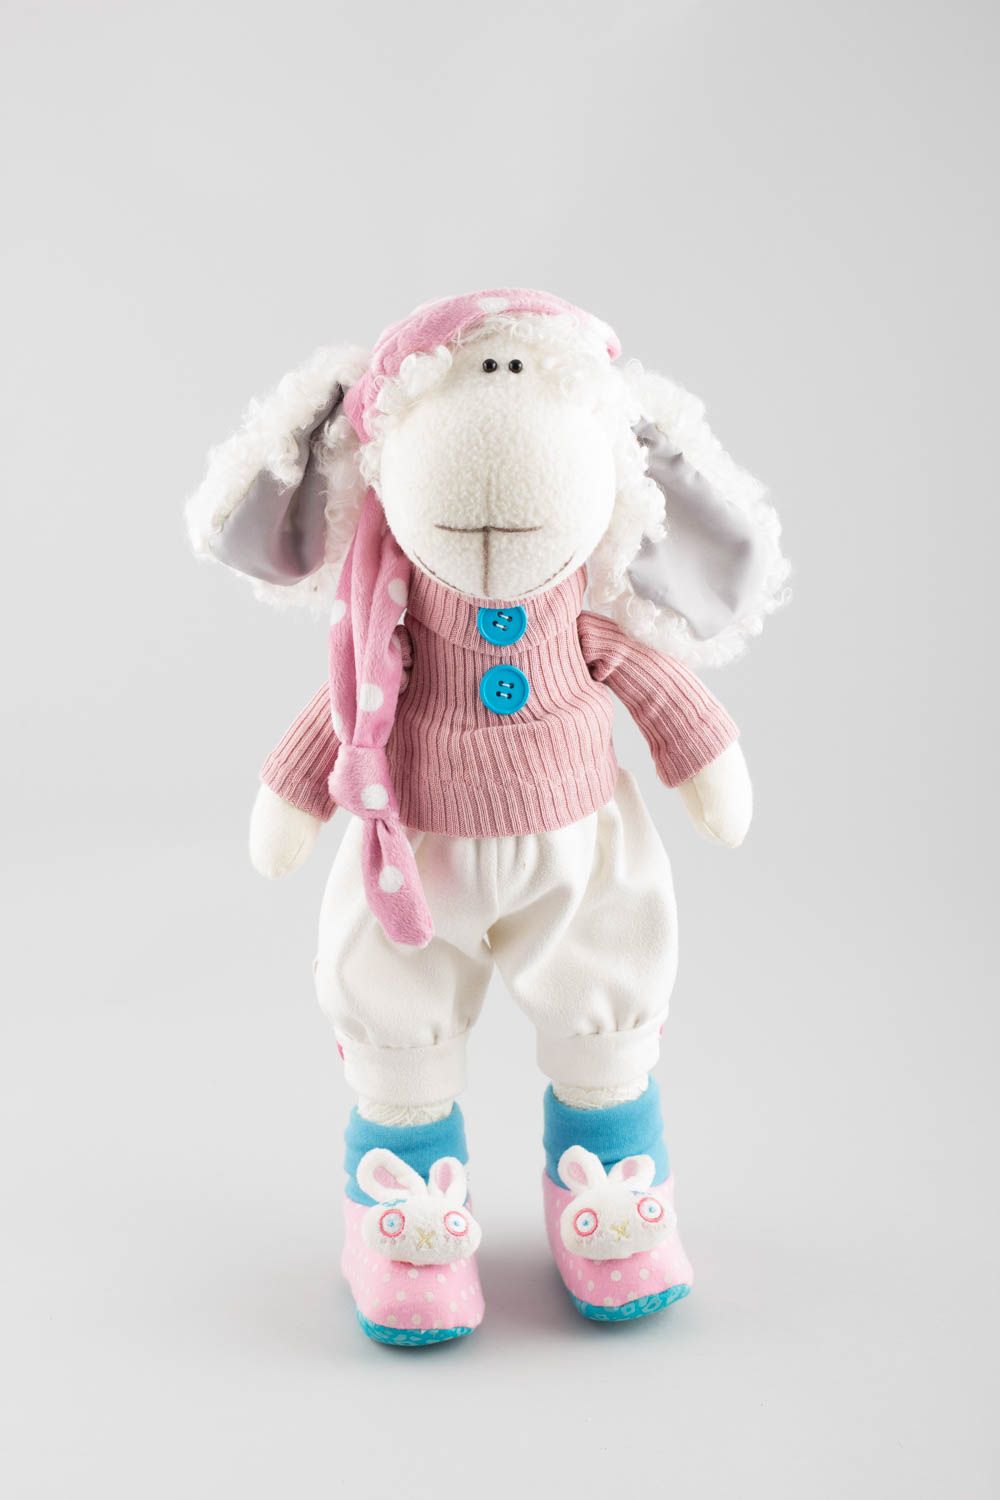 Textil Kuscheltier Schaf in rosa Kleidung niedlich Spielzeug für Kinder und Deko foto 2